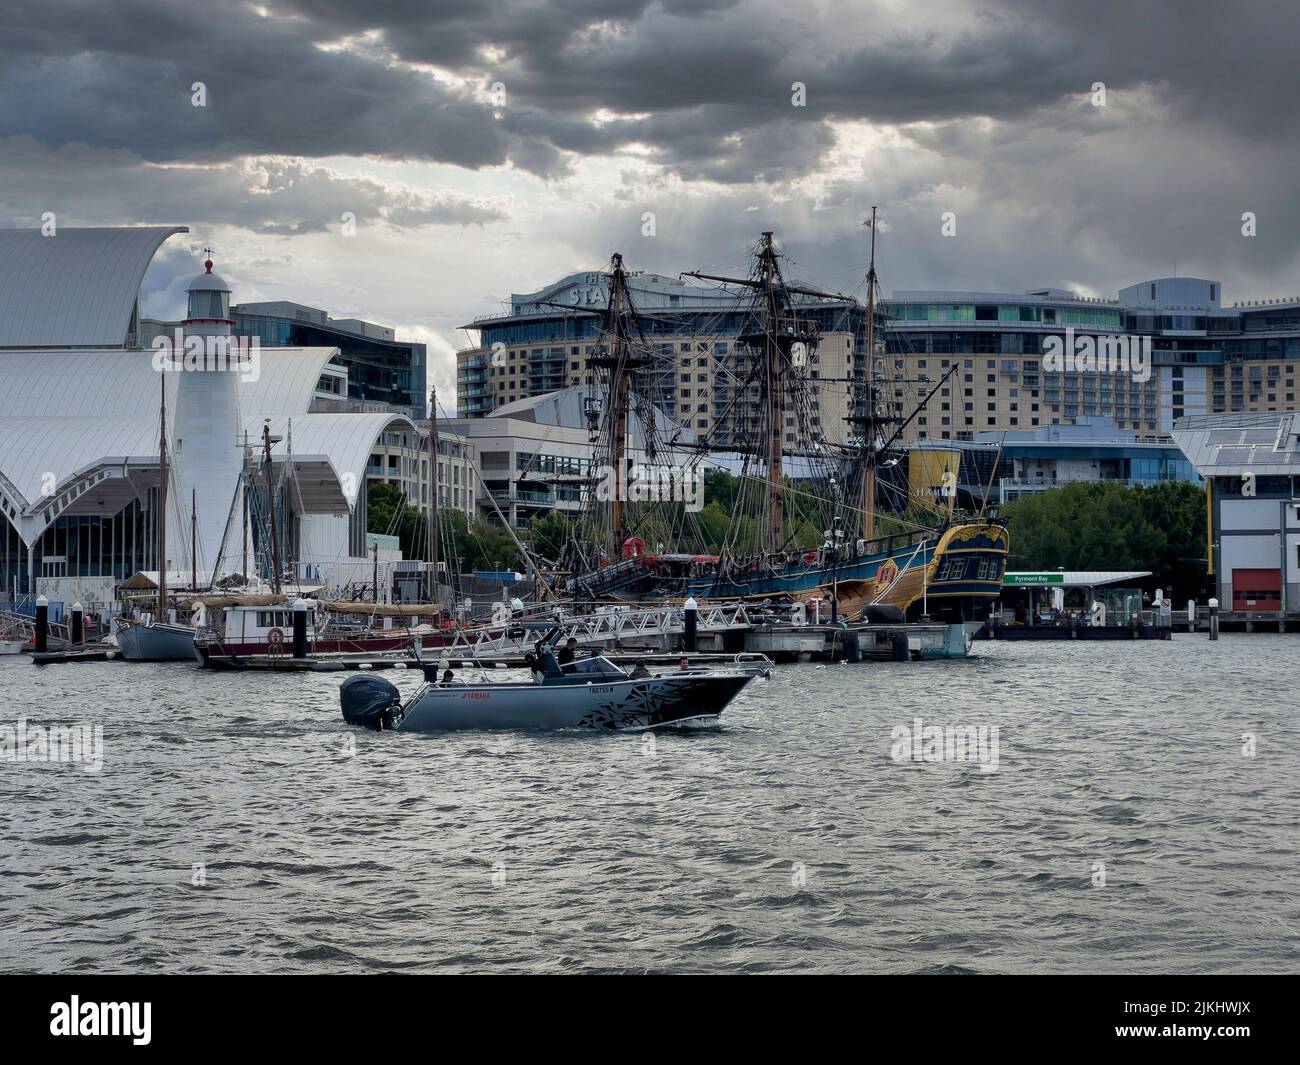 Barche, yatch, navi storiche al molo di King Street prima di una tempesta, Sydney NSW Australia Foto Stock